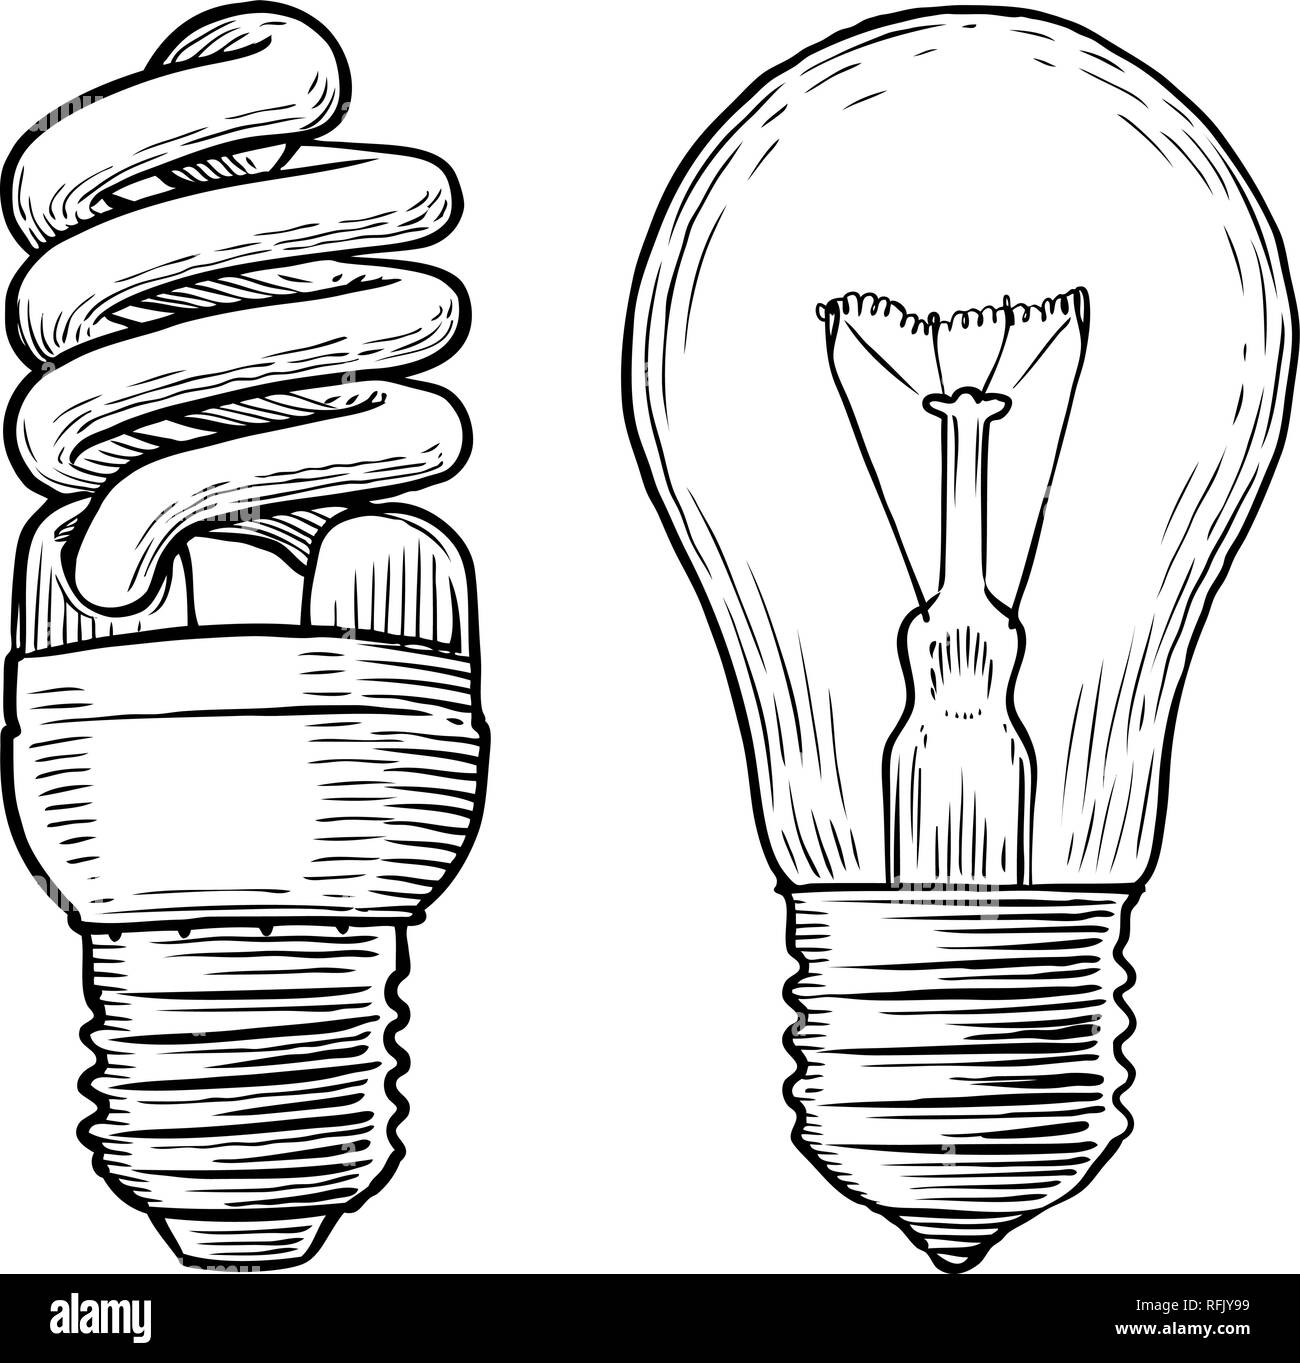 Bombilla, lámpara de boceto. Electricidad, luz eléctrica, concepto energético. Vector dibujados a mano Ilustración del Vector